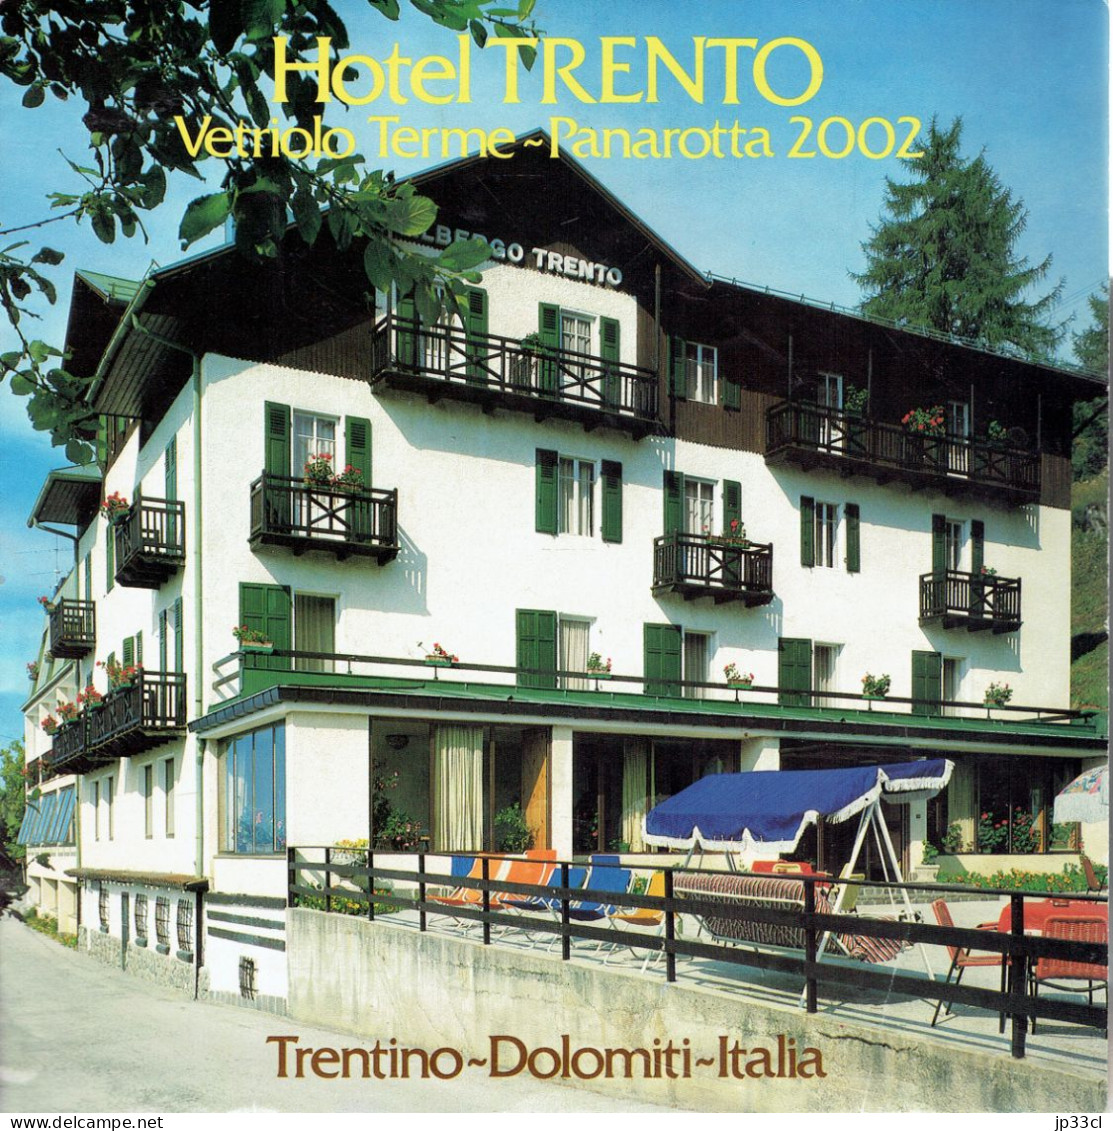 Dépliant Sur L'Hôtel Trento Vetriolo Terme - Panarota 2002, Dolomiti (en Français, Italien, Allemand Et Anglais) - Dépliants Turistici